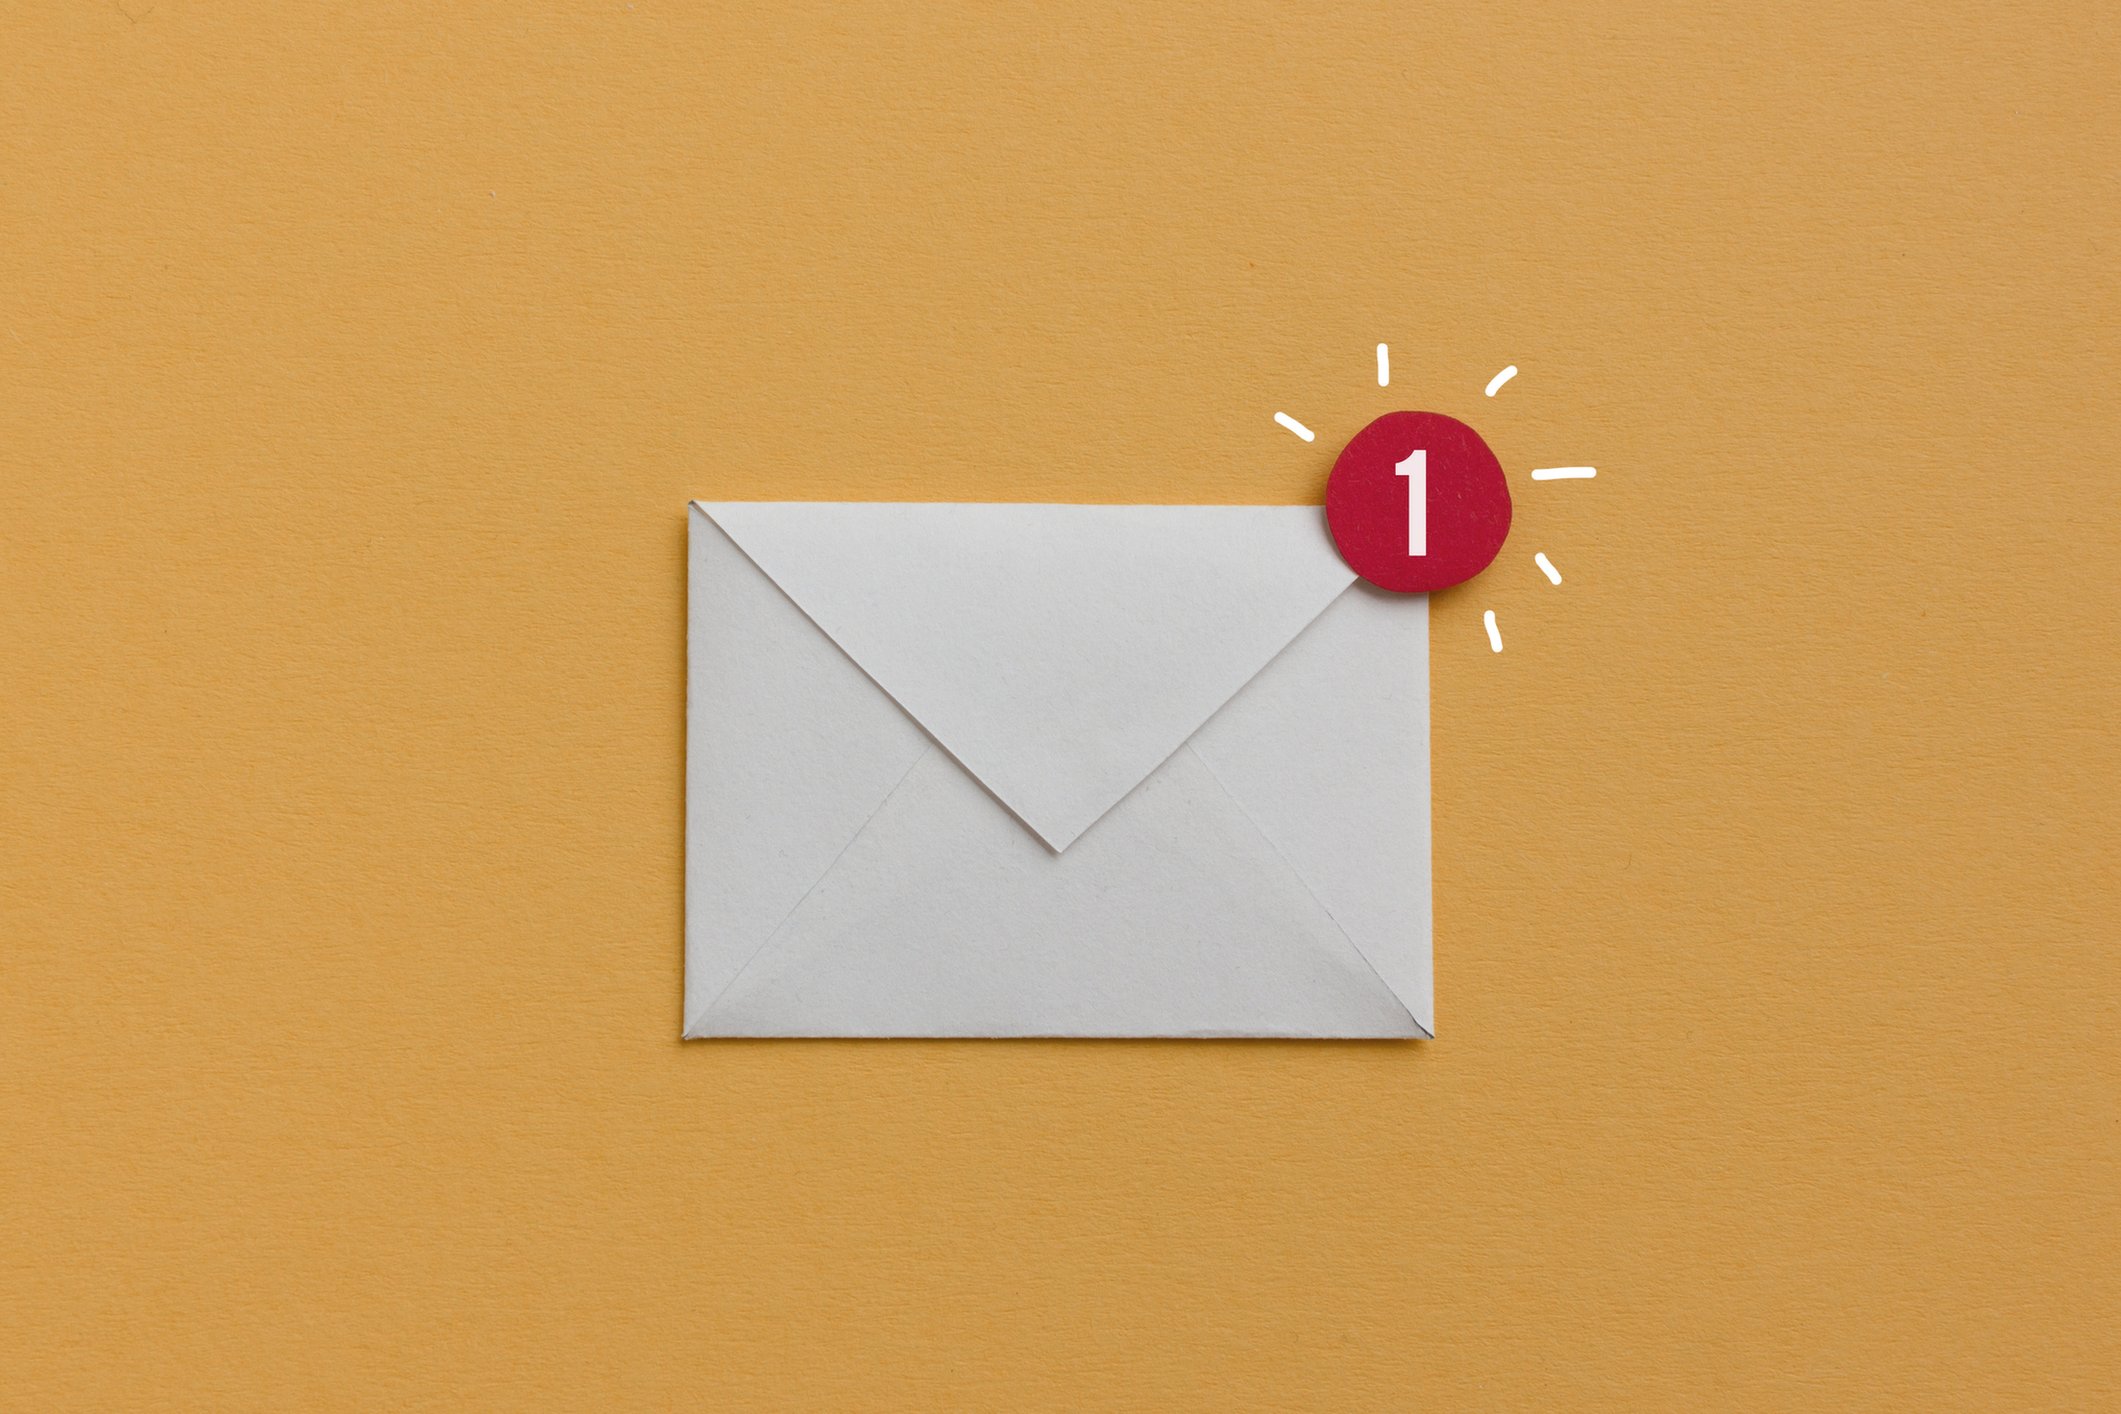 Estas son algunas alternativas posibles a los correos electrónicos más conocidos. (Foto Prensa Libre: Getty Images)